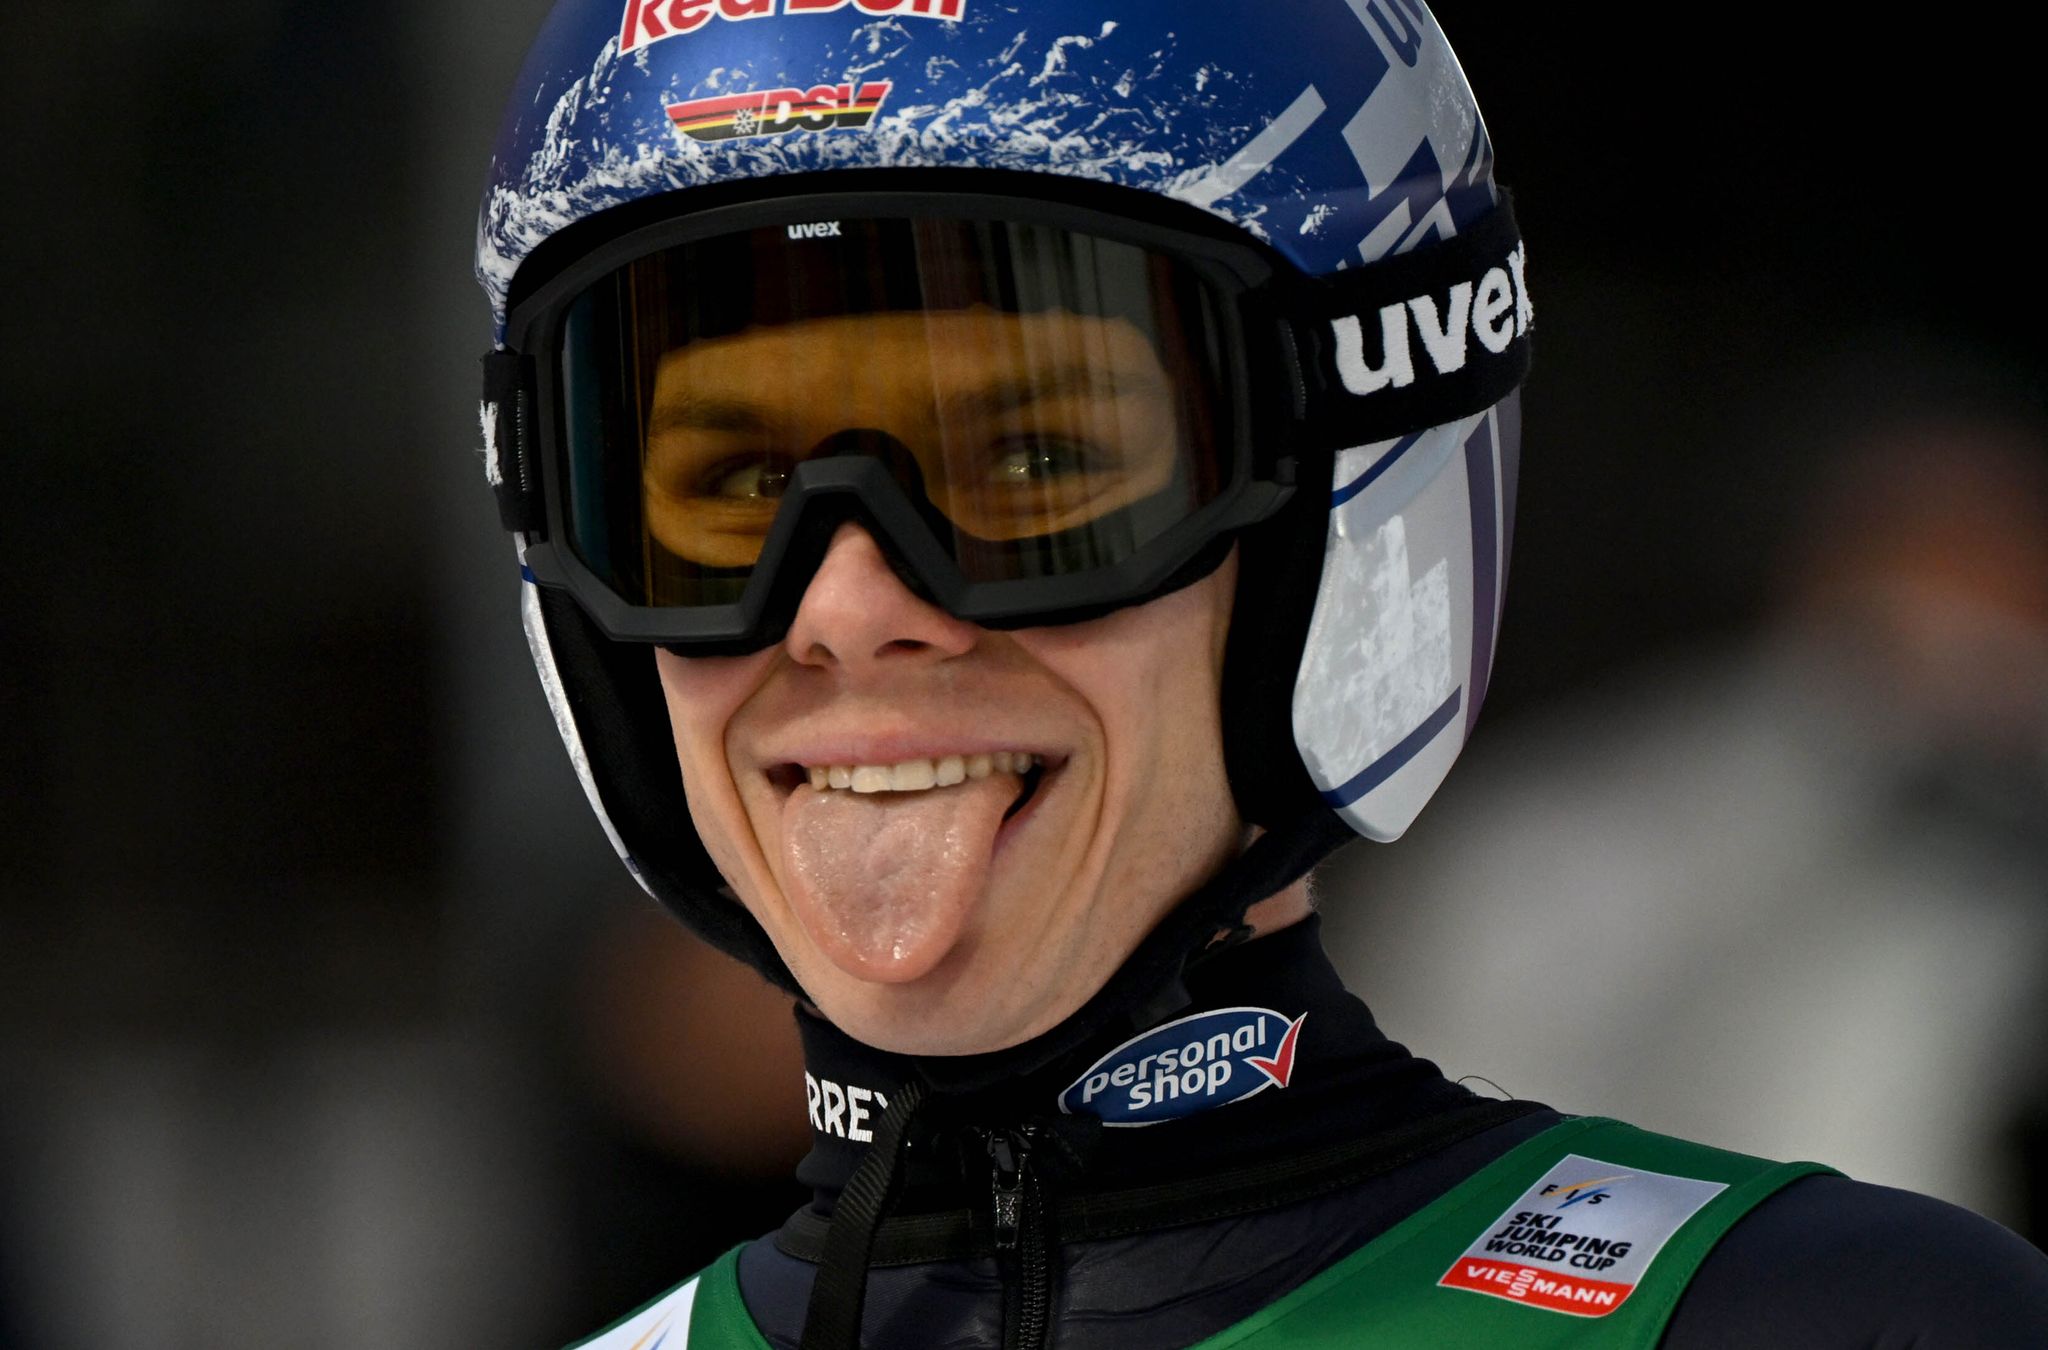 Bei Skisprung-Star Andreas Wellinger läuft es. Der 28 Jahre alte Olympiasieger belegte in Garmisch-Partenkirchen Rang drei. Er bleibt damit bei der Vierschanzentournee Führender in der Gesamtwertung.